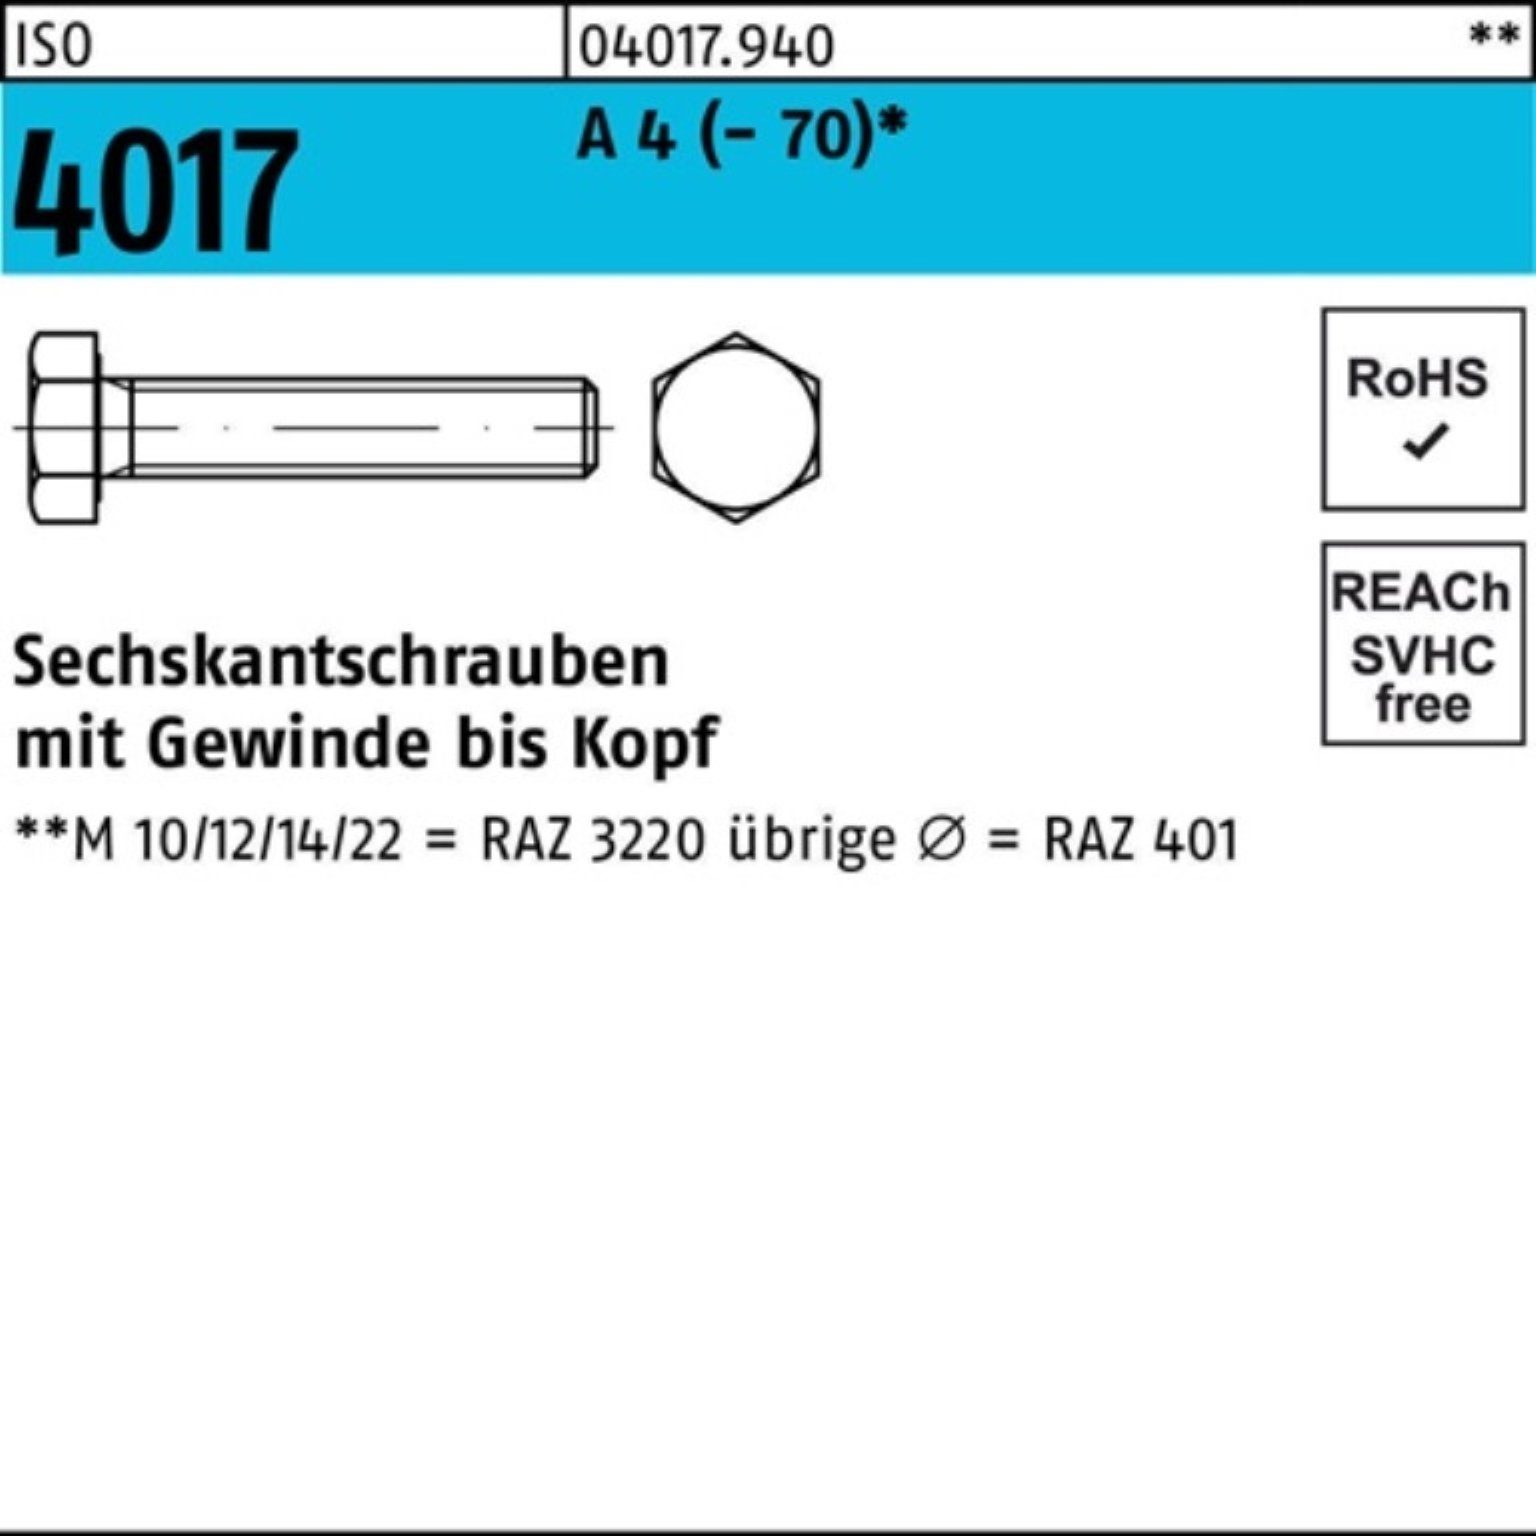 Sechskantschraube 4017 50 Sechskantschraube Bufab A (70) M14x ISO 100er 4 Pack 20 Stück VG